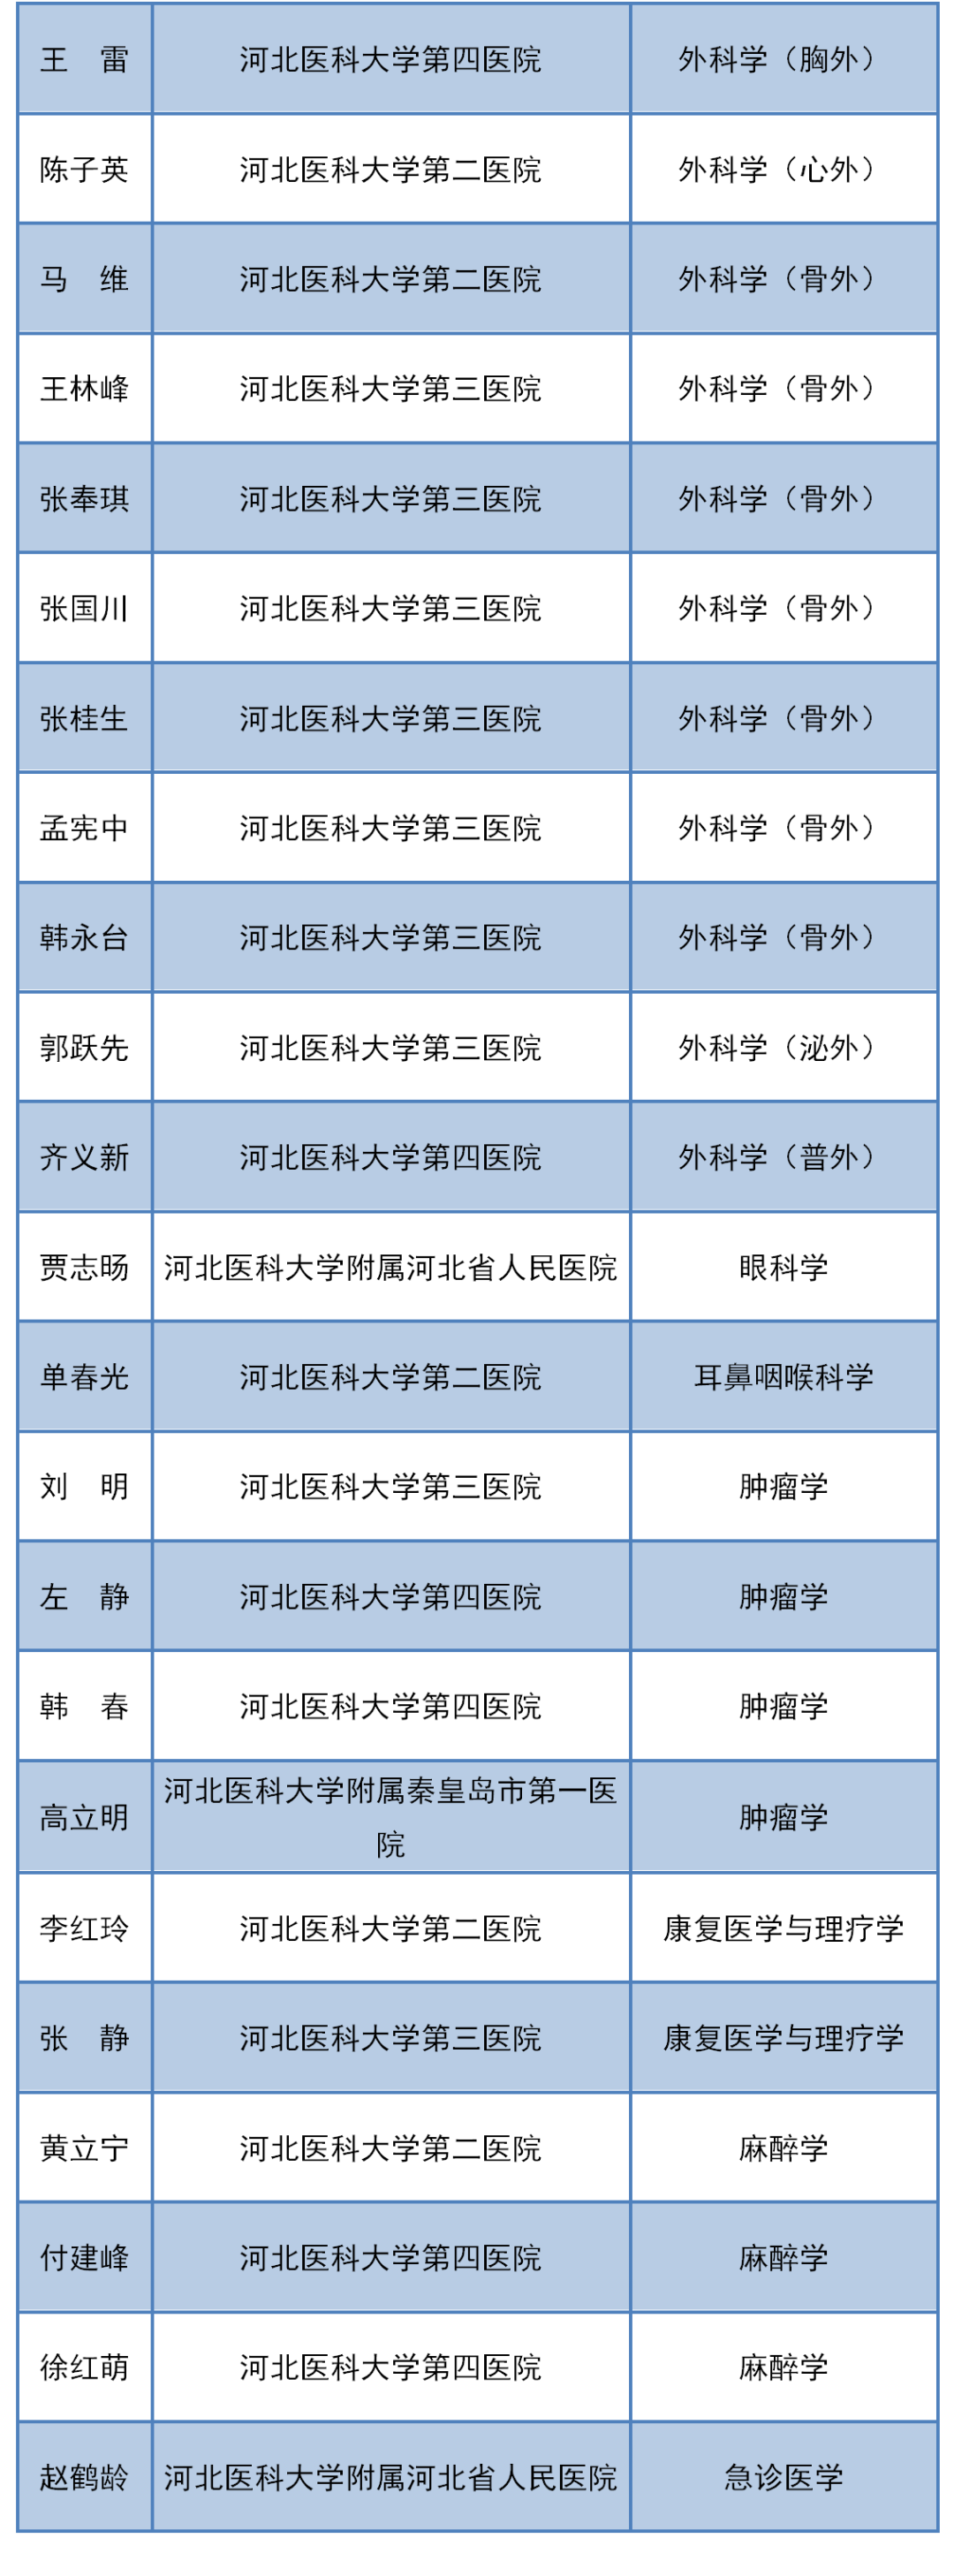 河北医科大学关于聘任46名临床医学专业学位博士研究生指导教师的通知